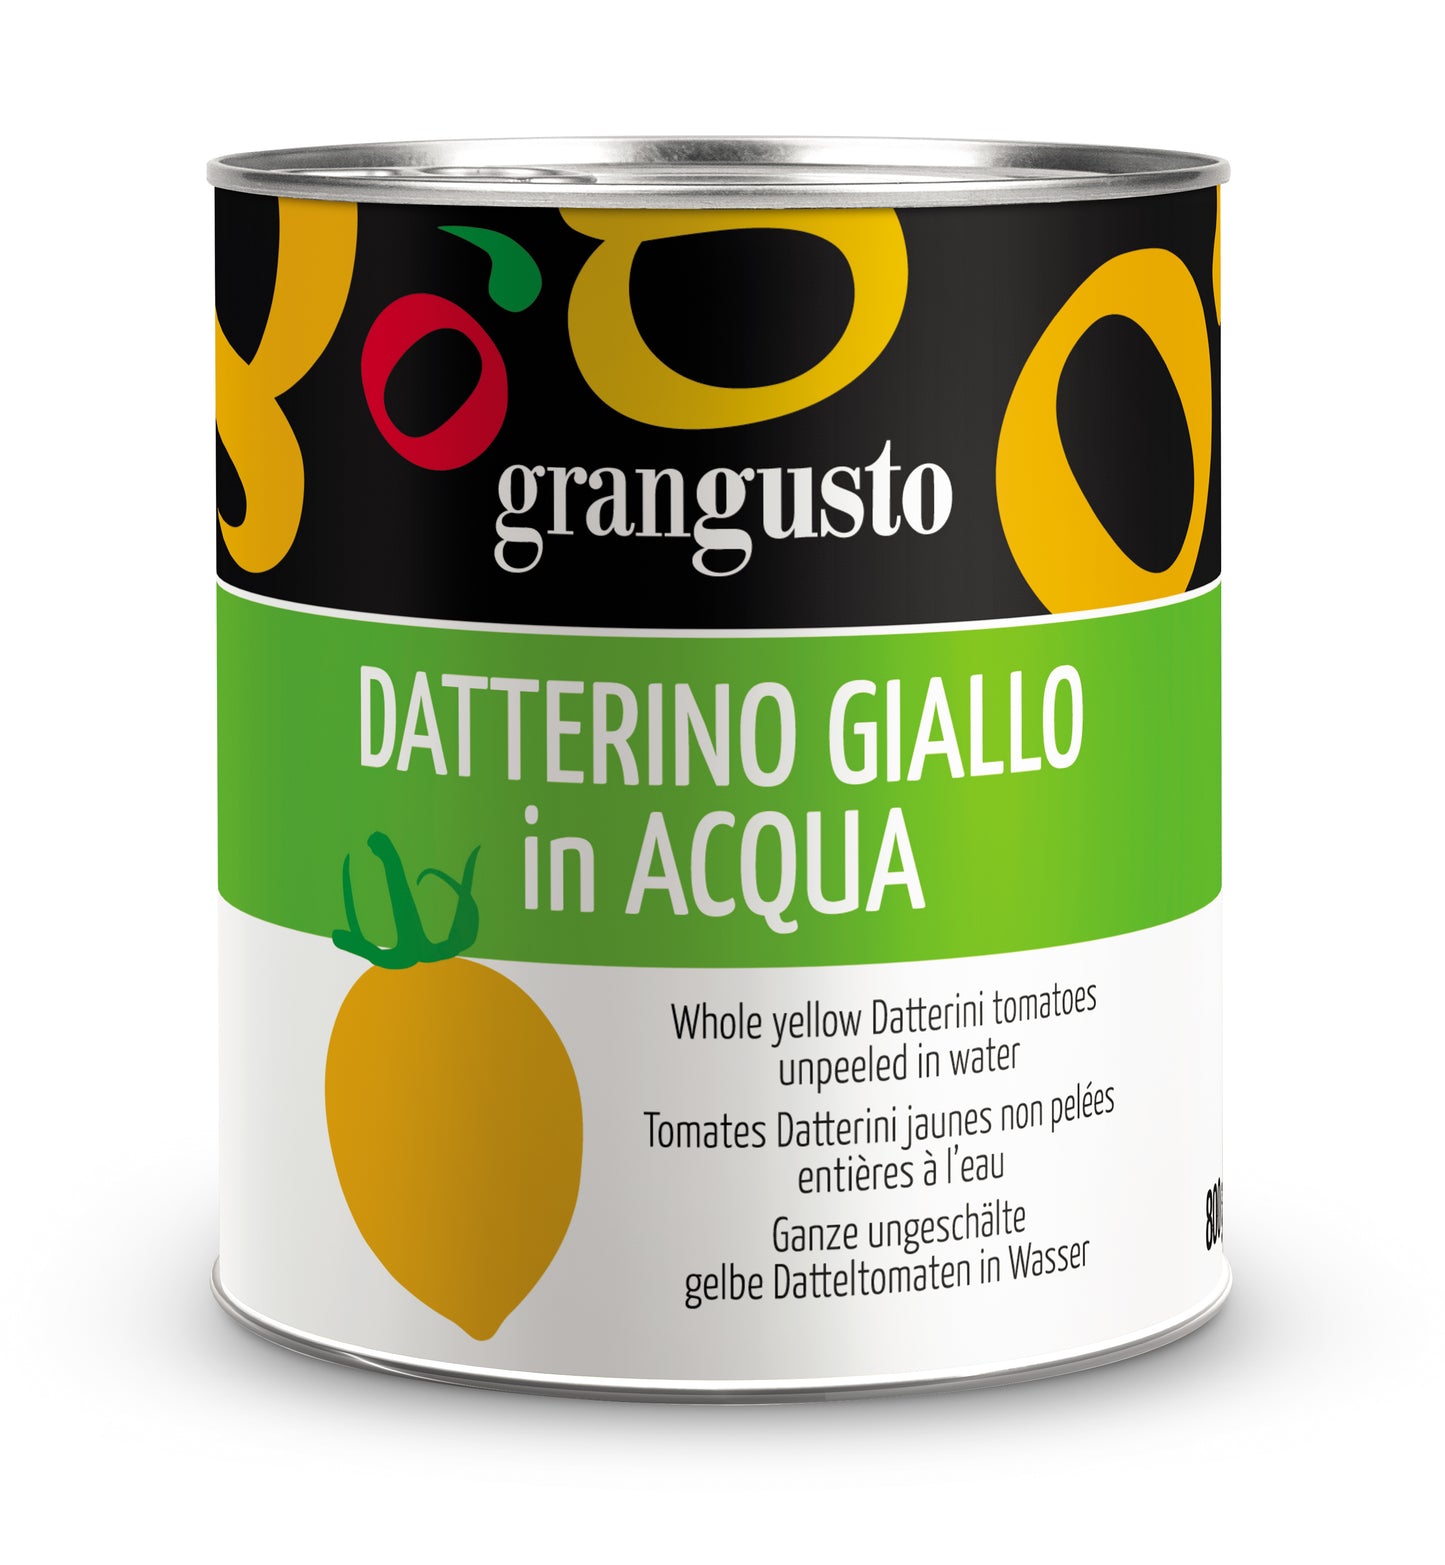 Datterino Giallo in Acqua 800grx6 pcs- GranGusto